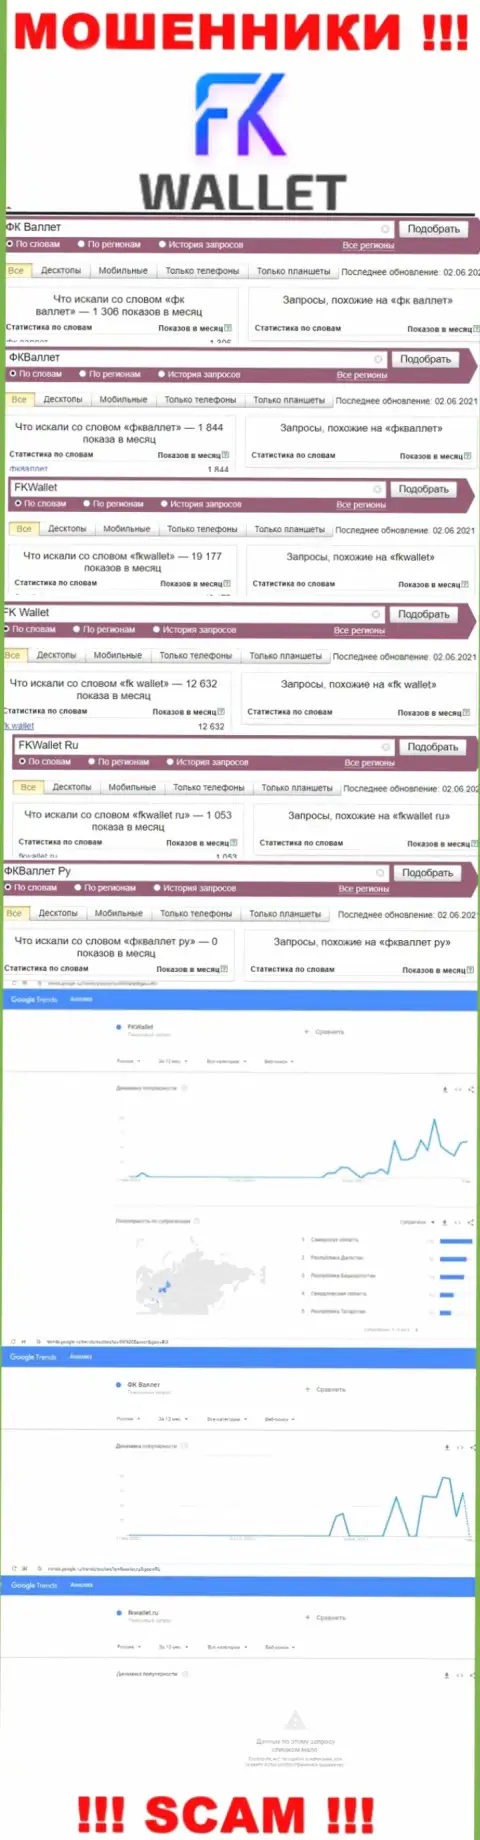 Скриншот итога онлайн-запросов по противоправно действующей конторе ФКВаллет